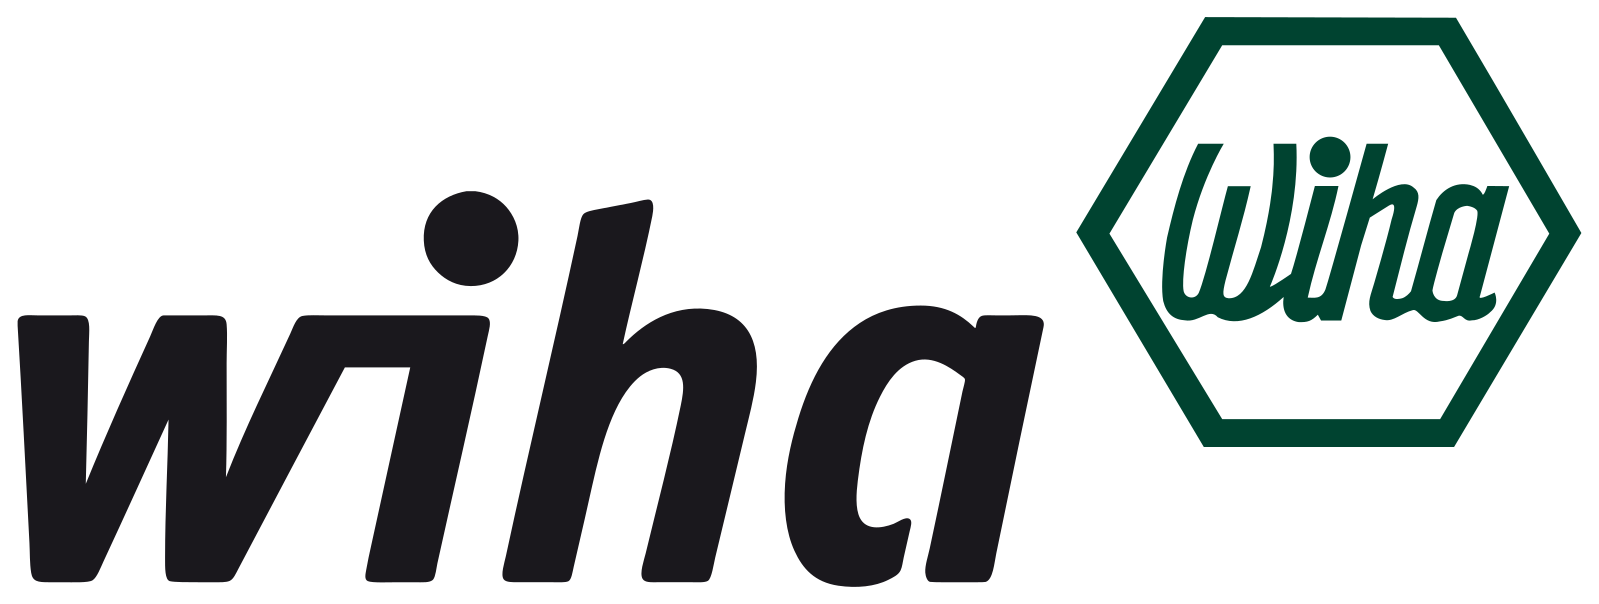 Логотип Wiha (Виха)